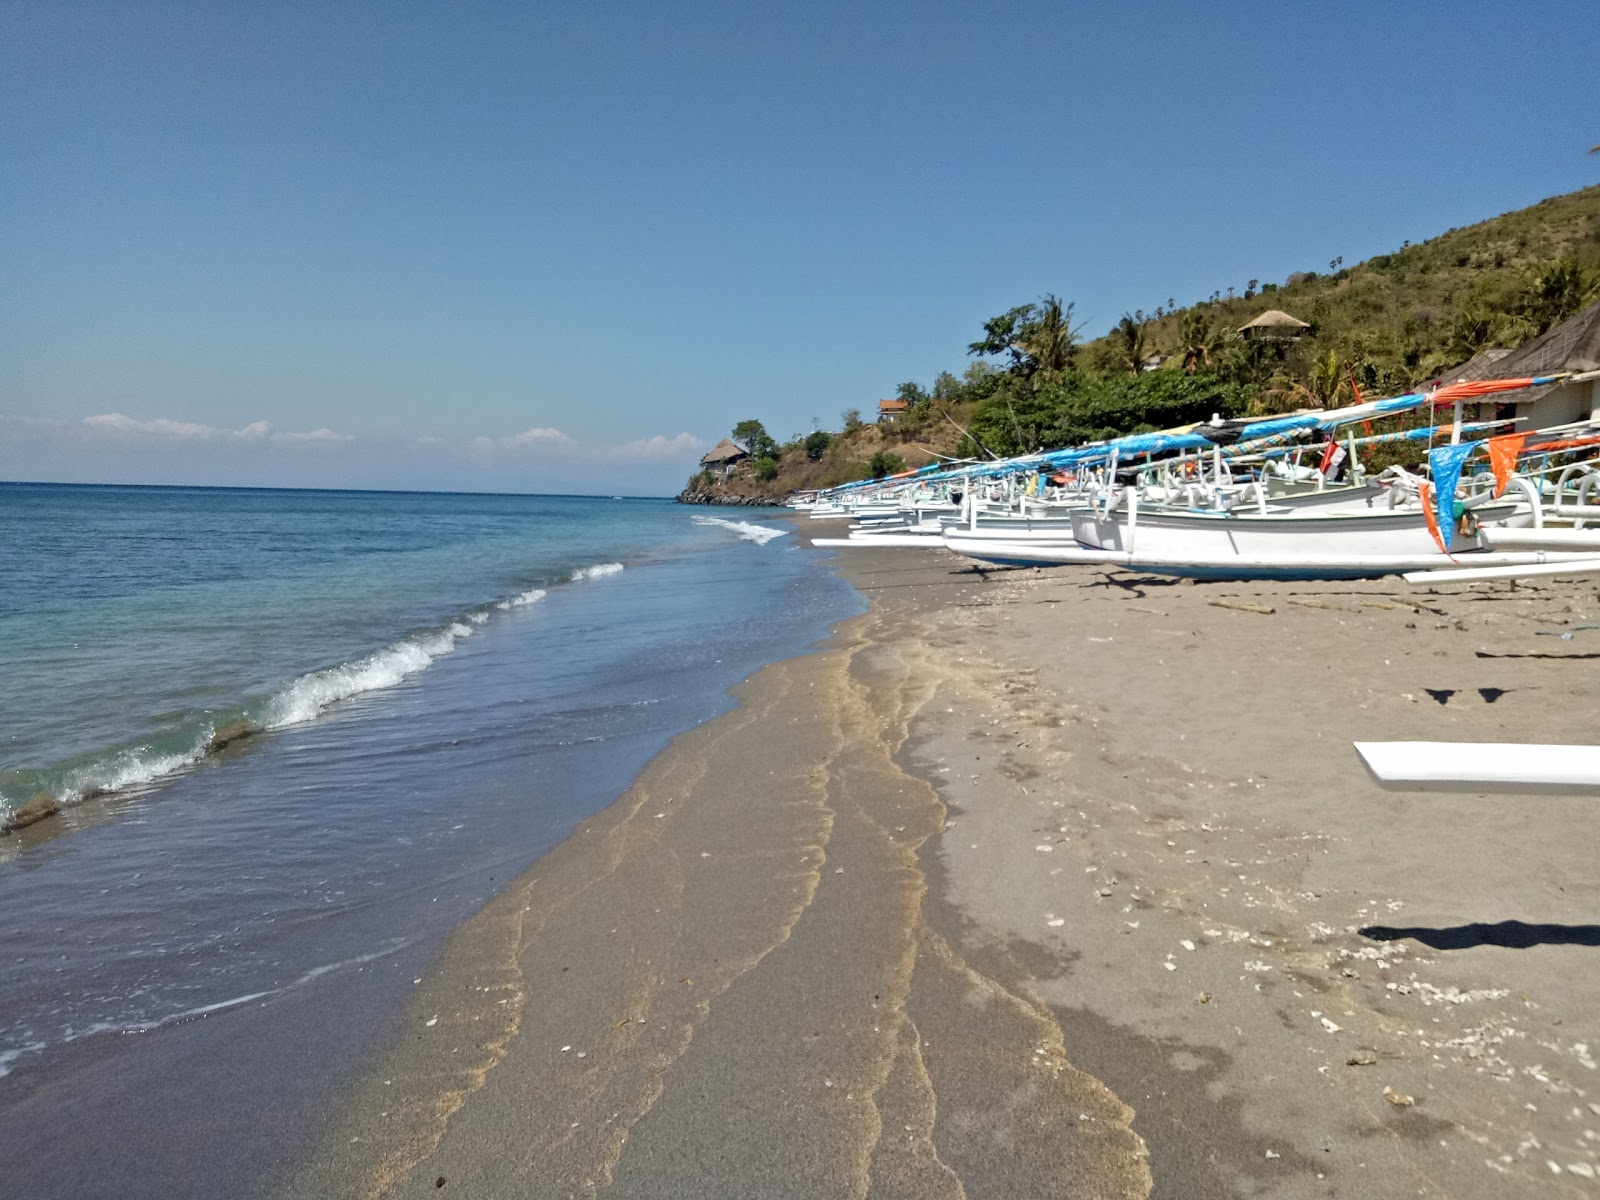 Fotografie cu Bintang Beach cu o suprafață de nisip maro